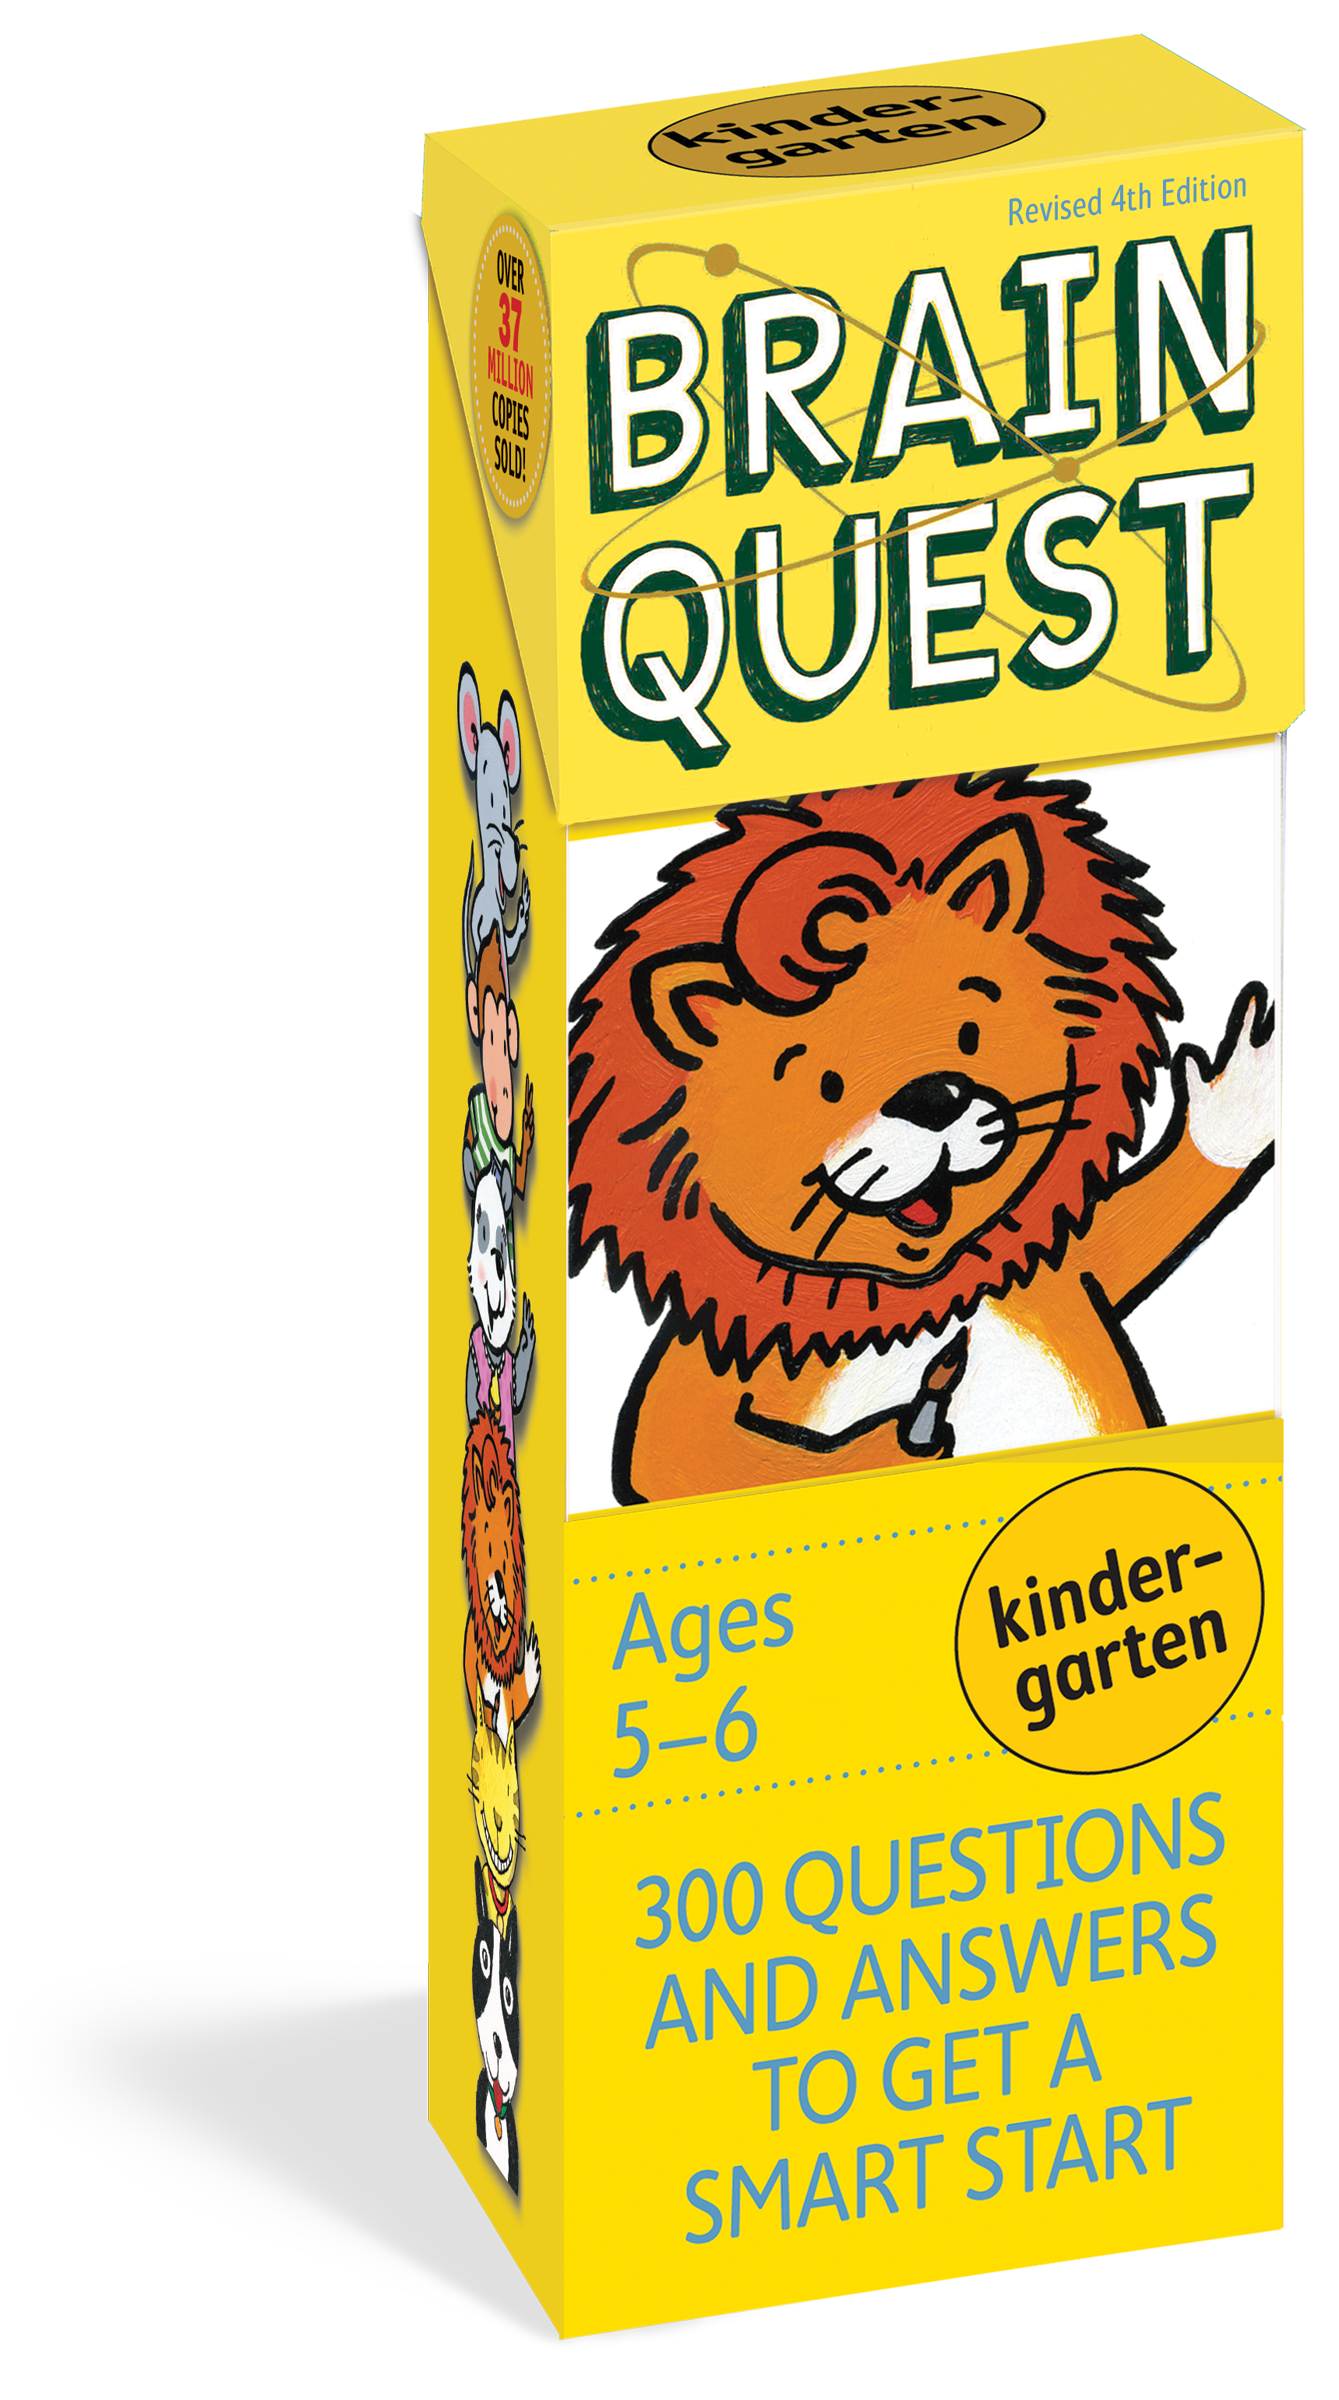 Brain Quest Cards: Kindergarten